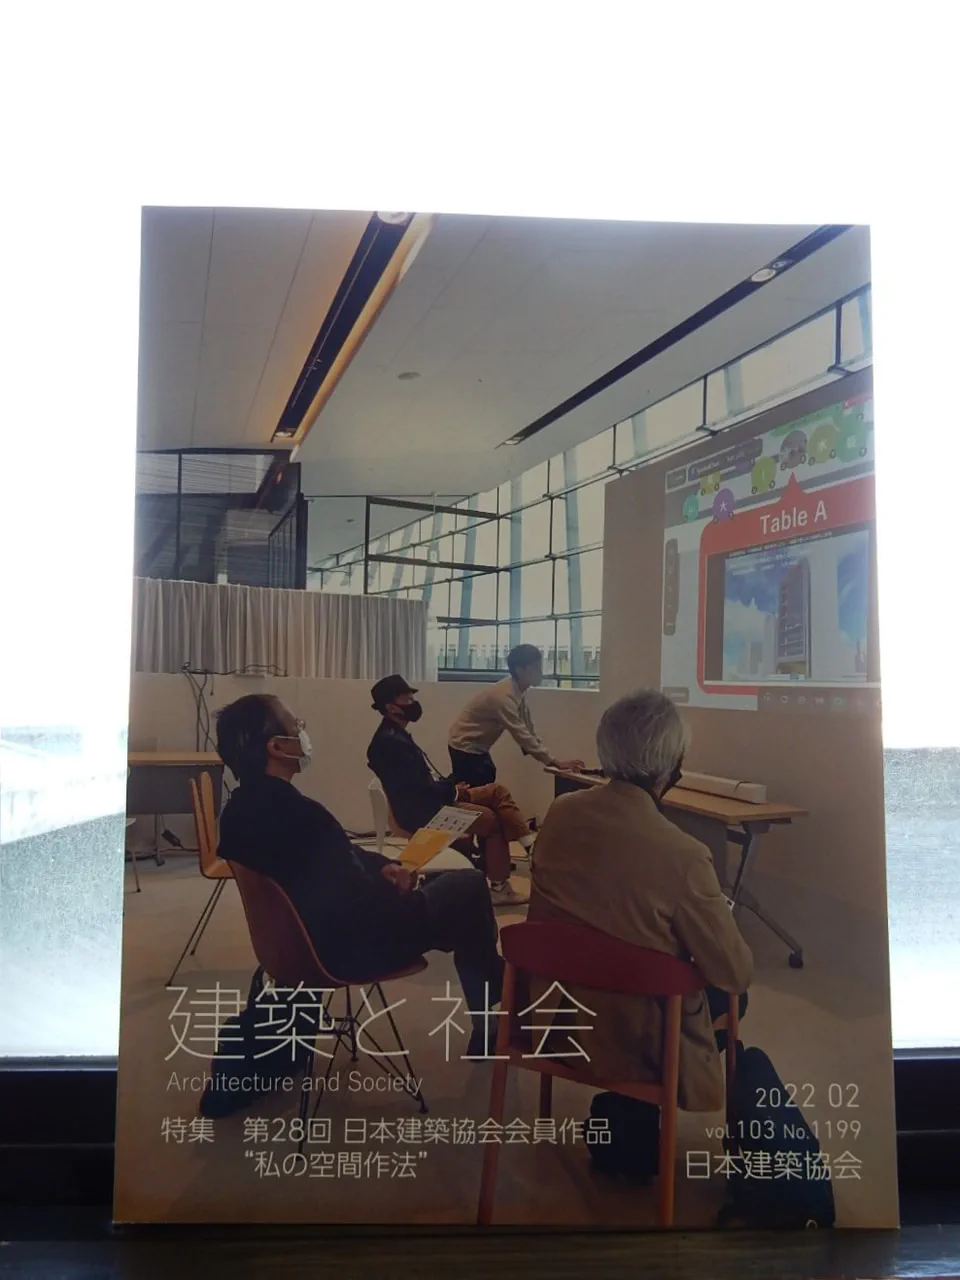 『建築と社会』に非常勤講師の吉永先生、貴志先生の作品が掲載されました